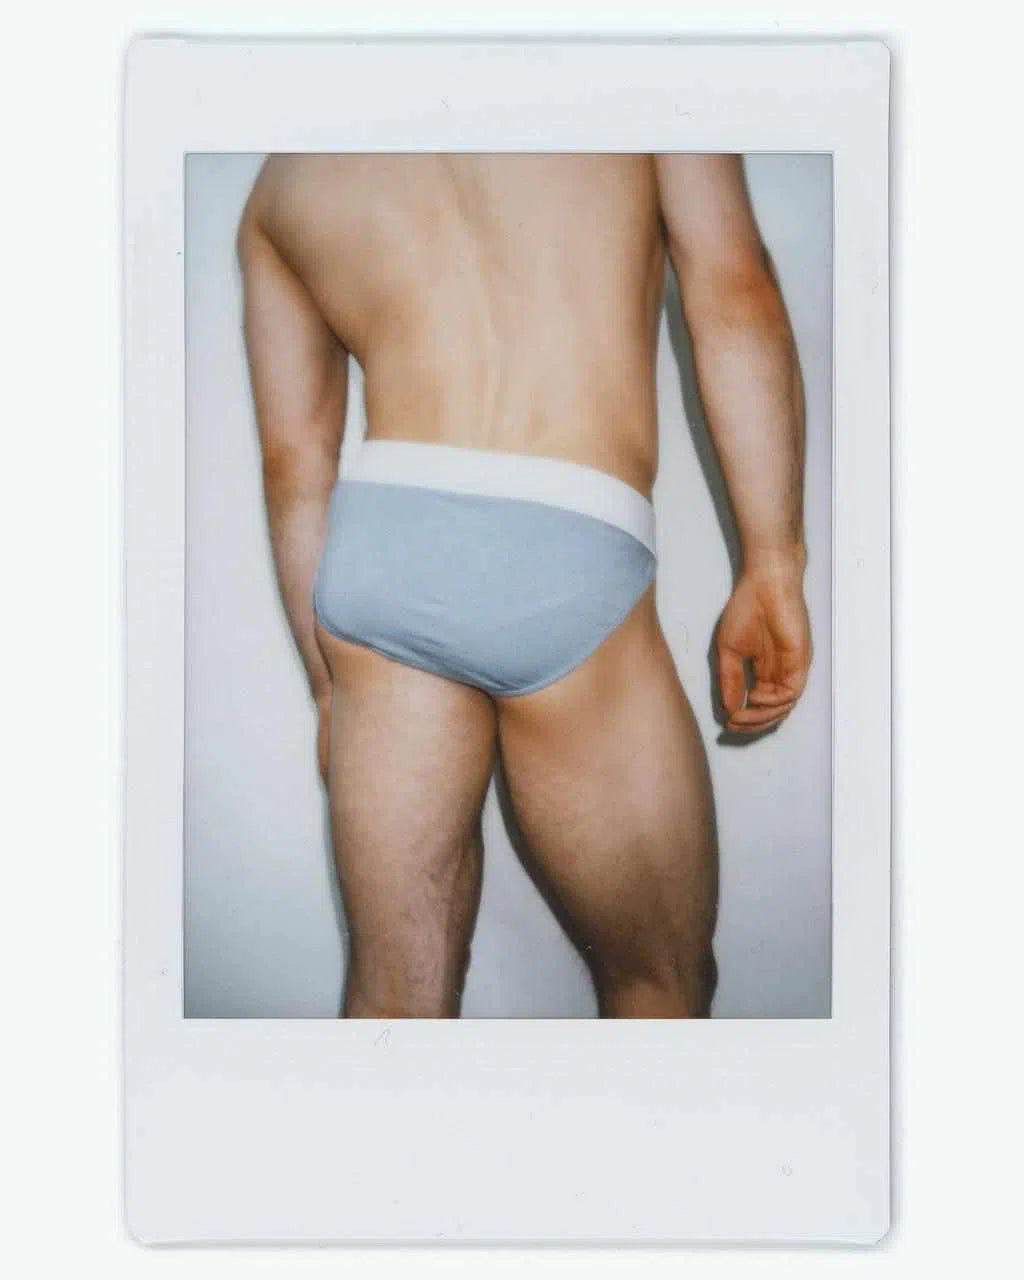 Pastel blue athletic sport brief men's underwear polaroid